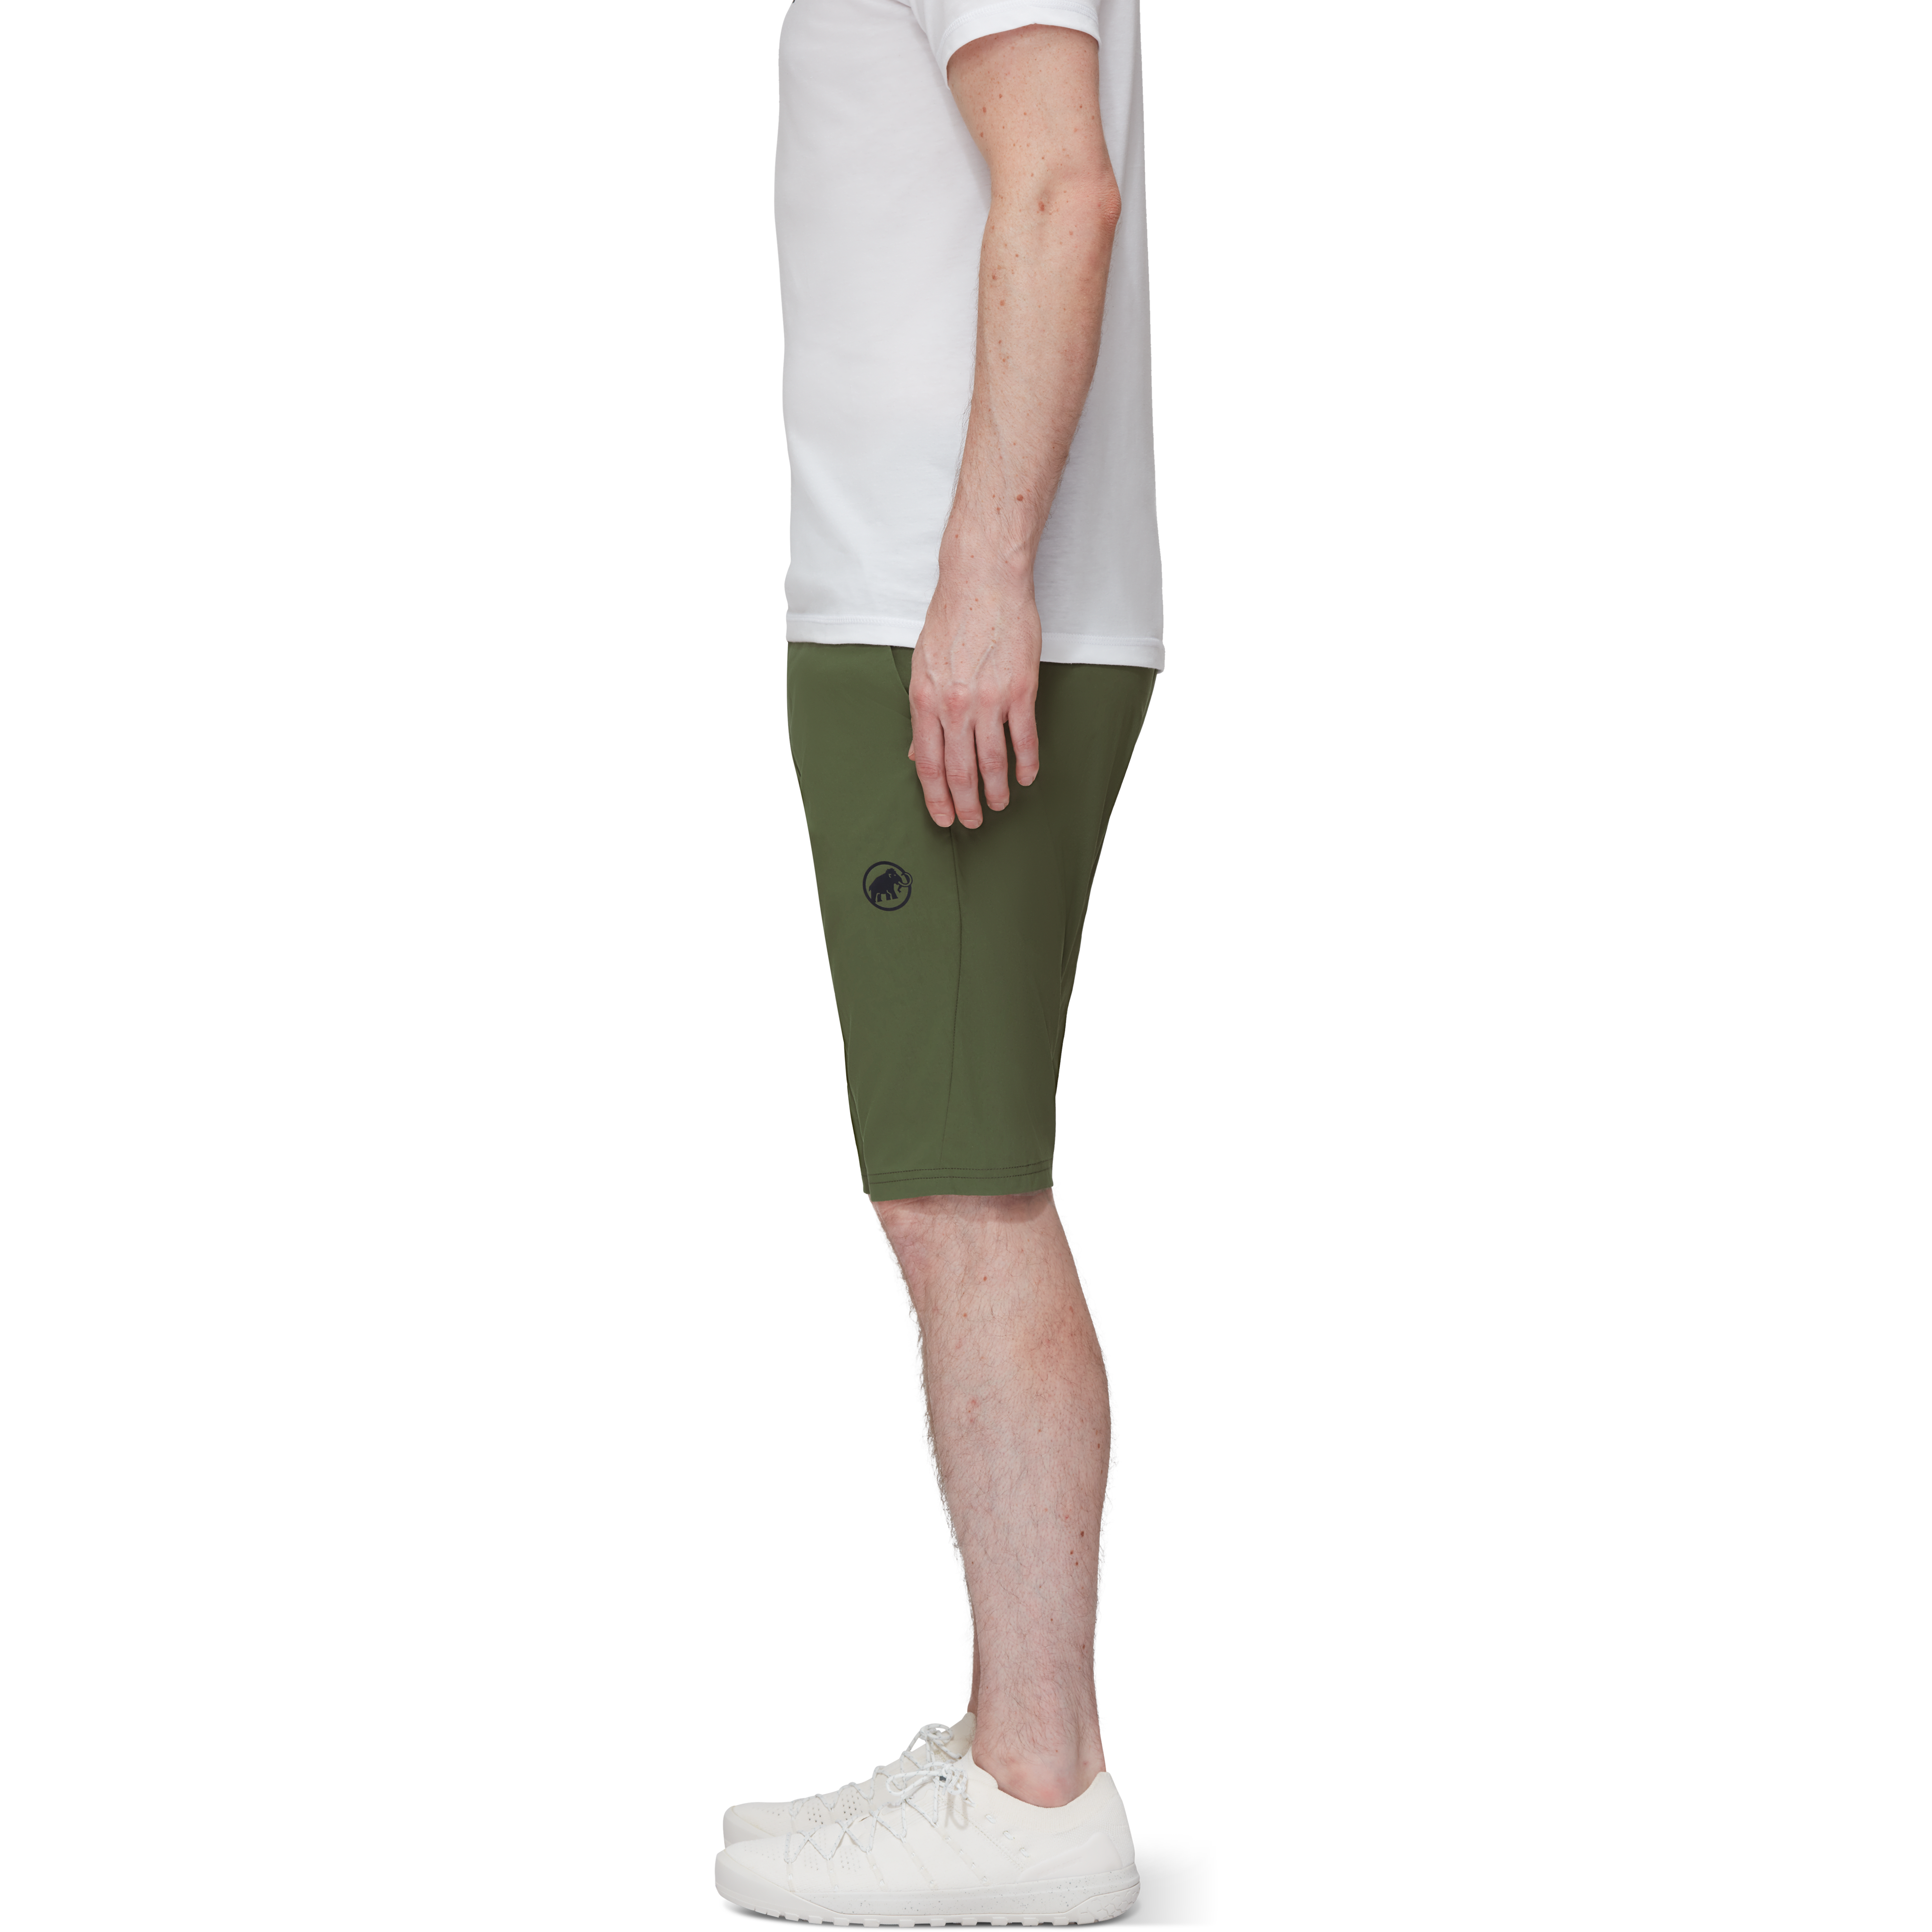 Hueco Shorts Men product image